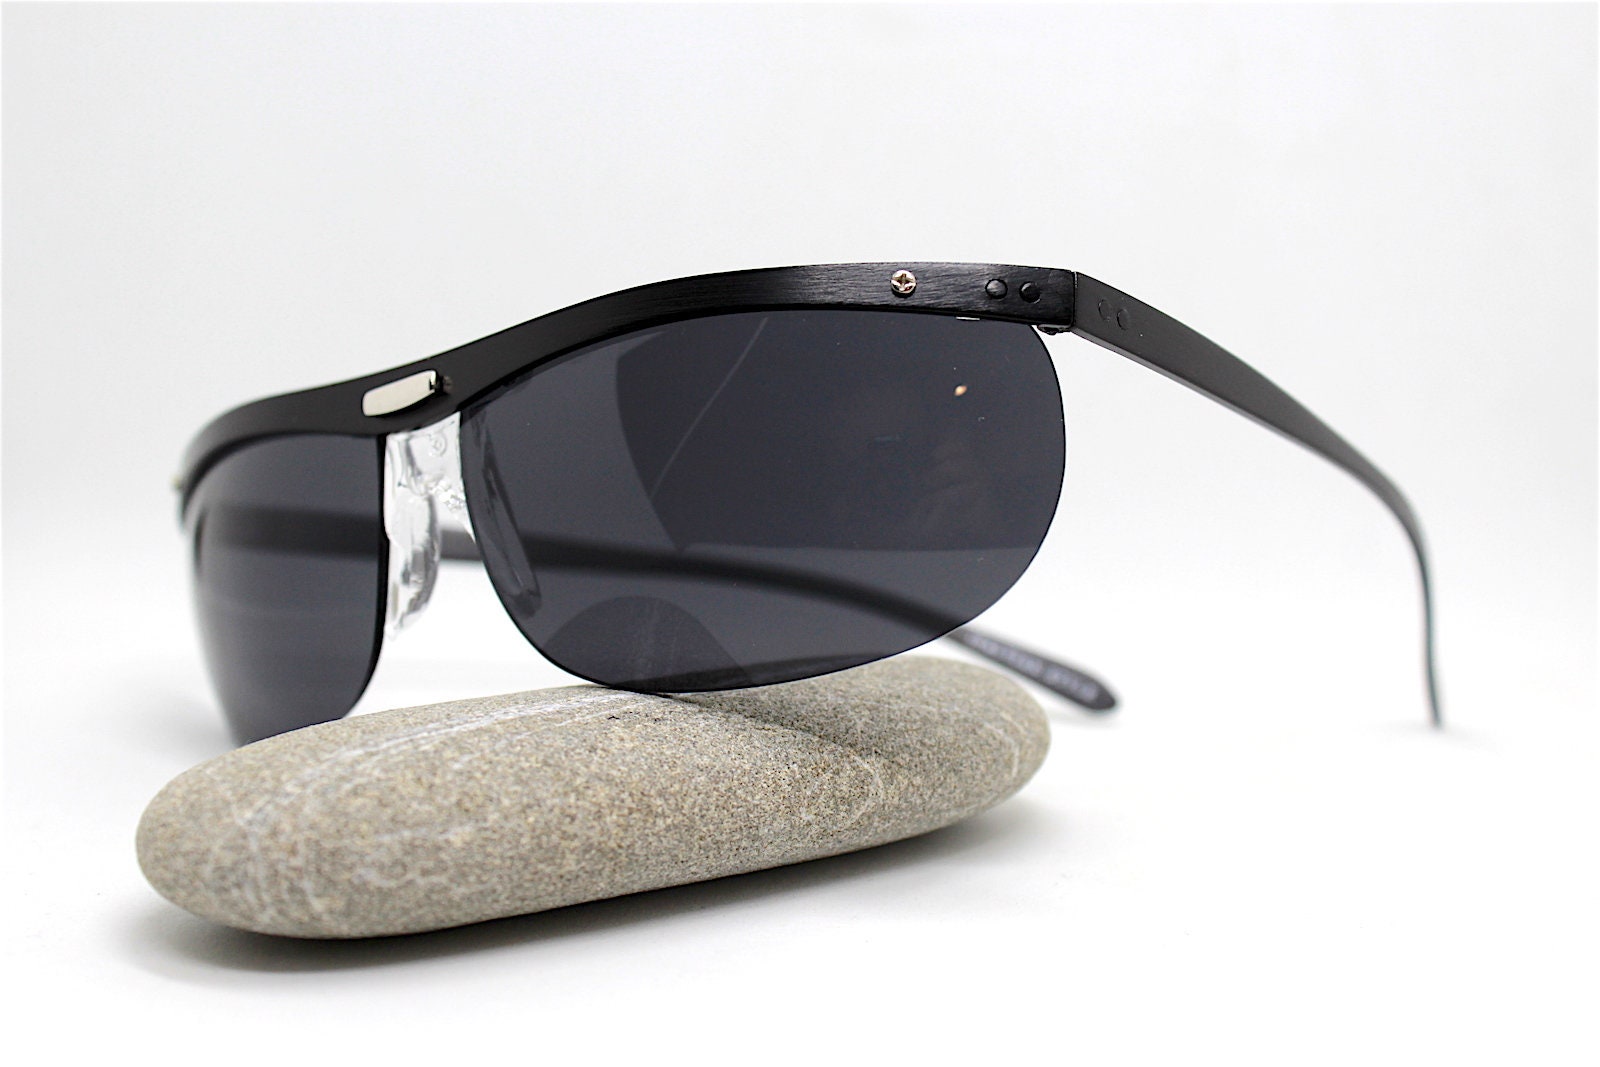 Occhiali da sole uomo vintage ovale avvolgente nero senza montatura Wrap  oval rimless sunglasses men black Italian style matrix futuristic